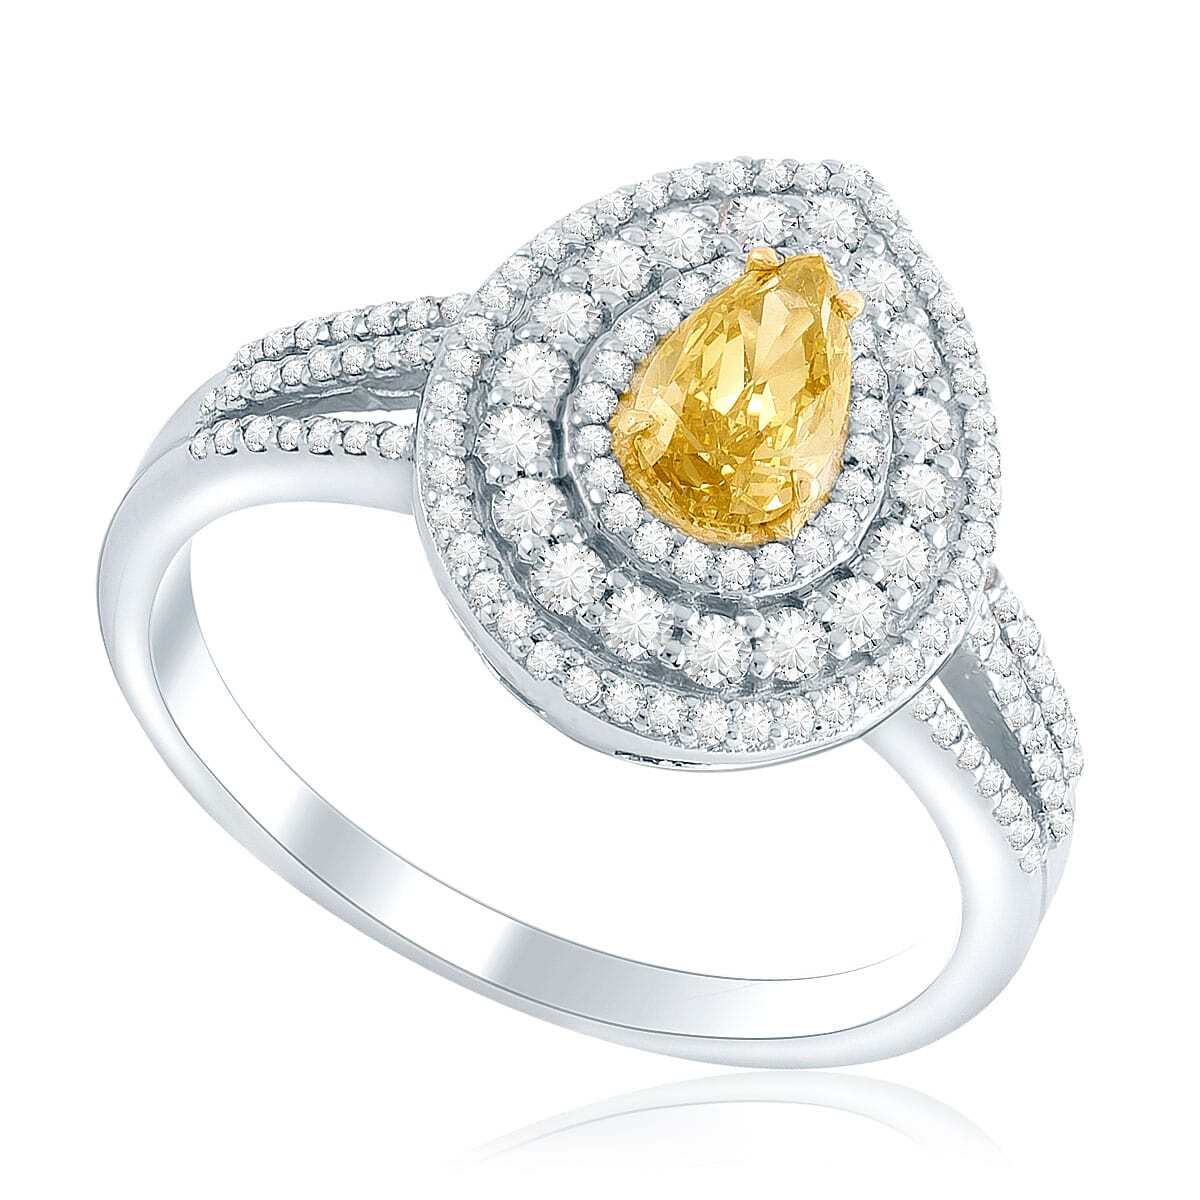 Anel de Ouro Branco 46 pts em Diamantes e Diamante Amarelo Central de 51 pts - Certificado GIA